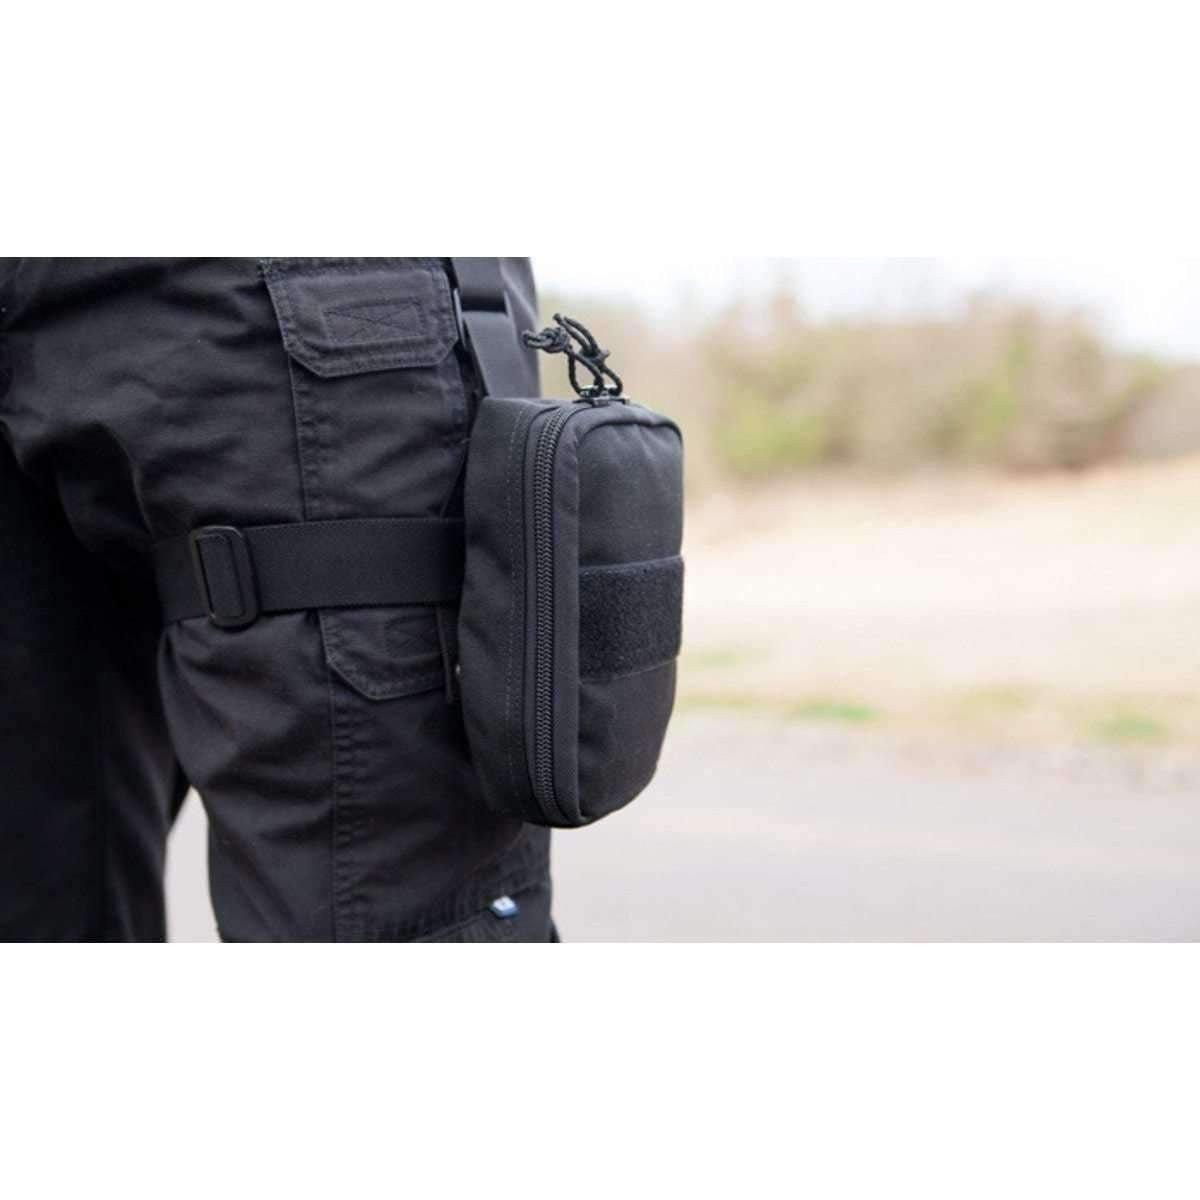 TacMed™ LAPD Kit - Vendor